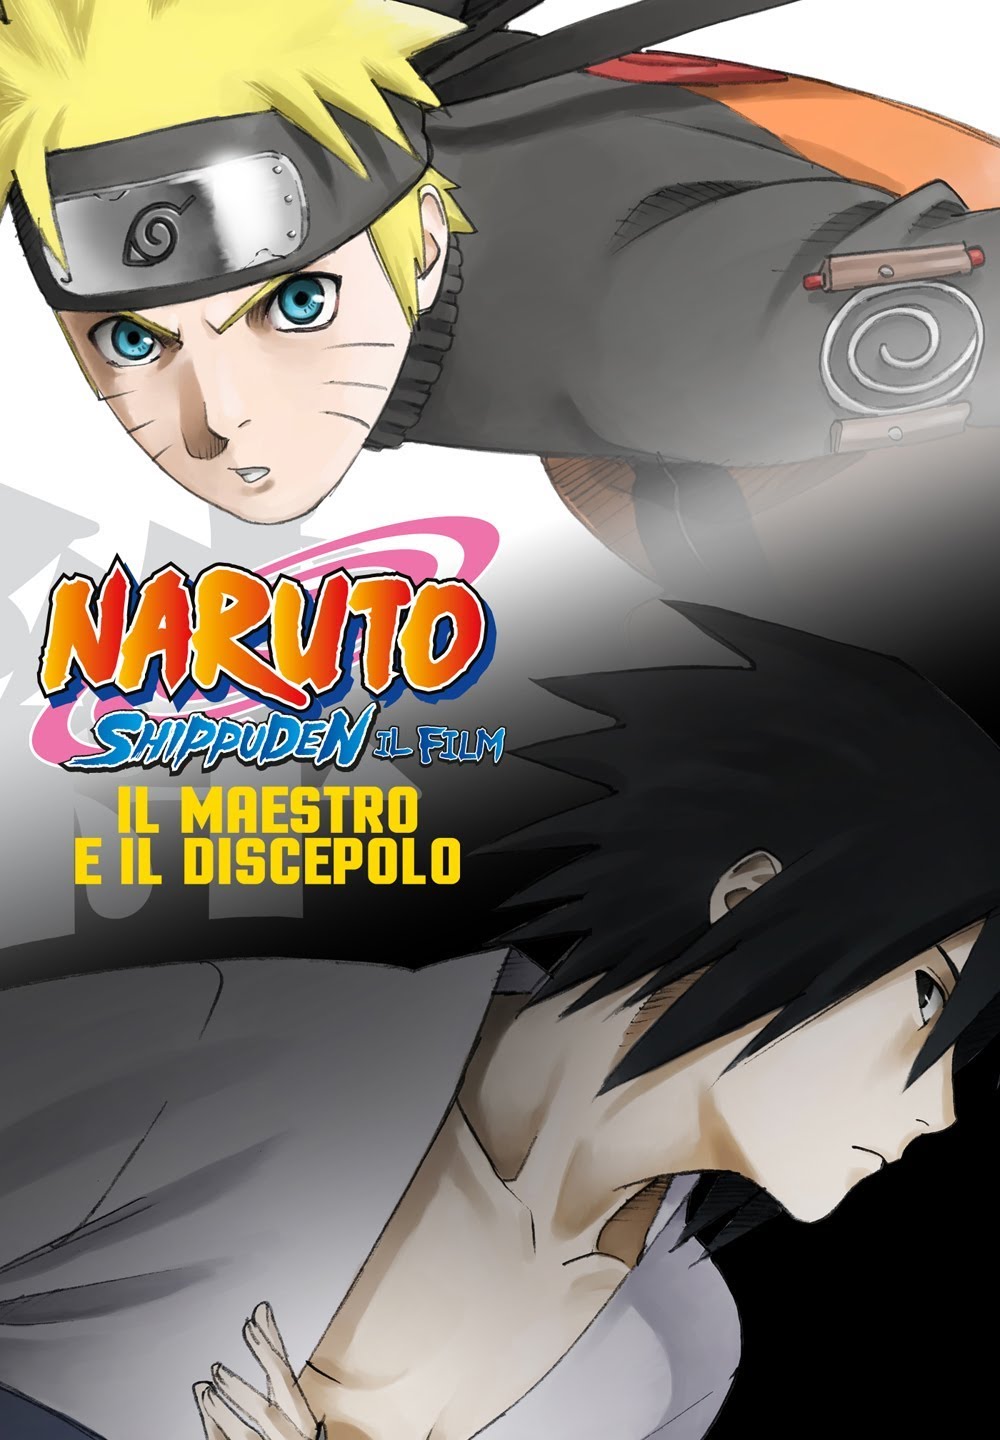 Naruto Shippuden – Il film: Il maestro e il discepolo [HD] (2015)